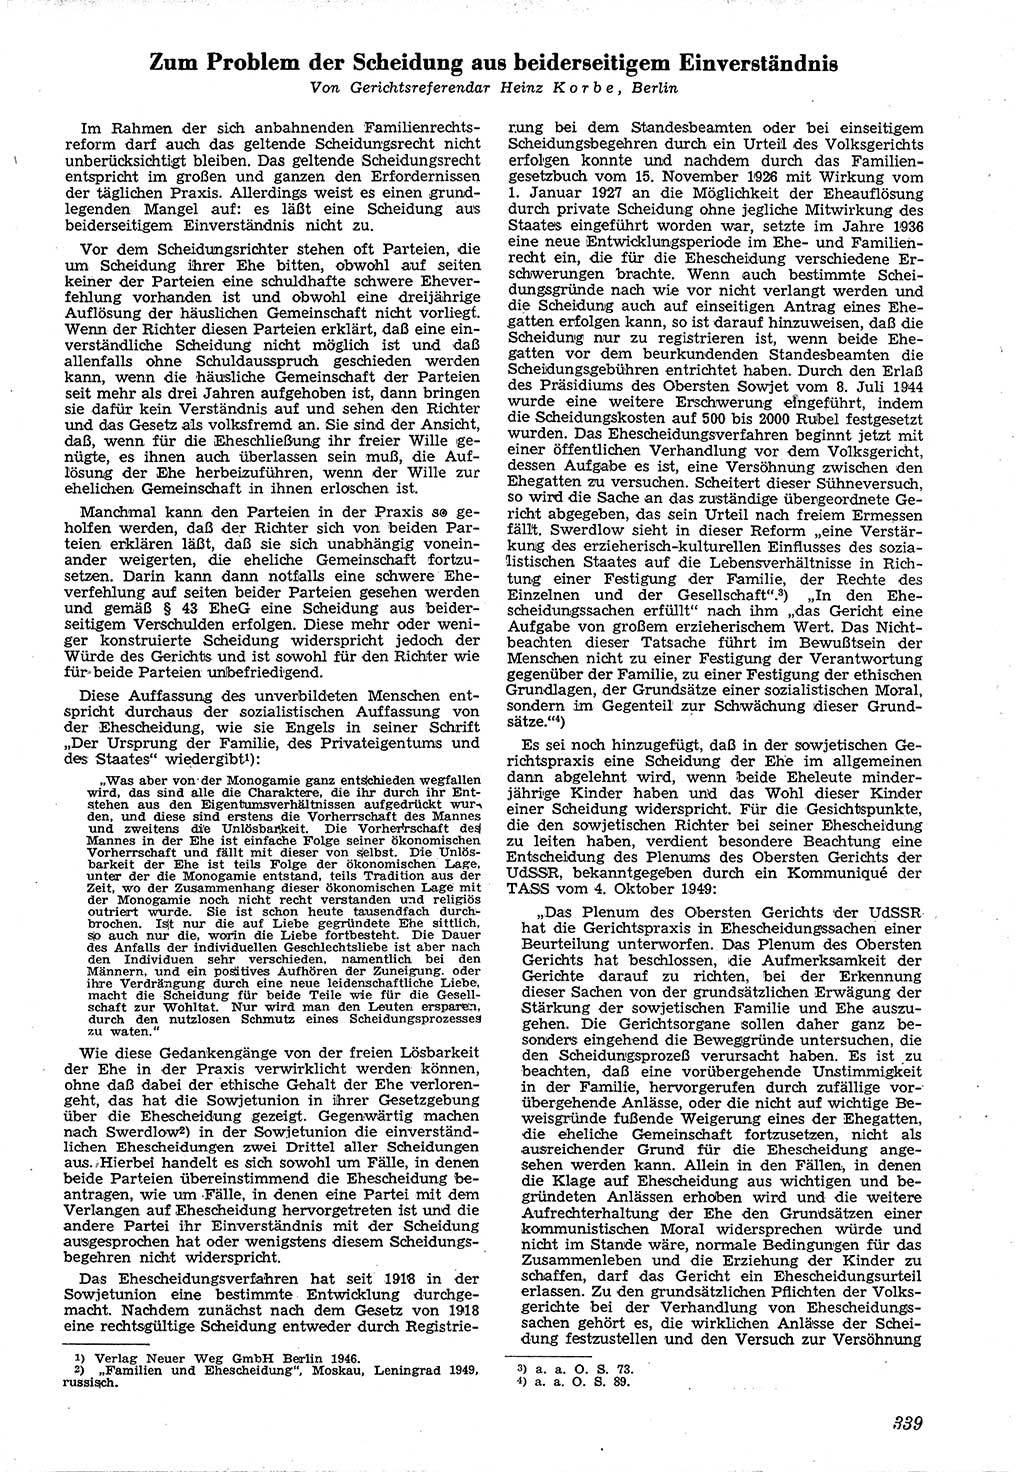 Neue Justiz (NJ), Zeitschrift für Recht und Rechtswissenschaft [Deutsche Demokratische Republik (DDR)], 4. Jahrgang 1950, Seite 339 (NJ DDR 1950, S. 339)